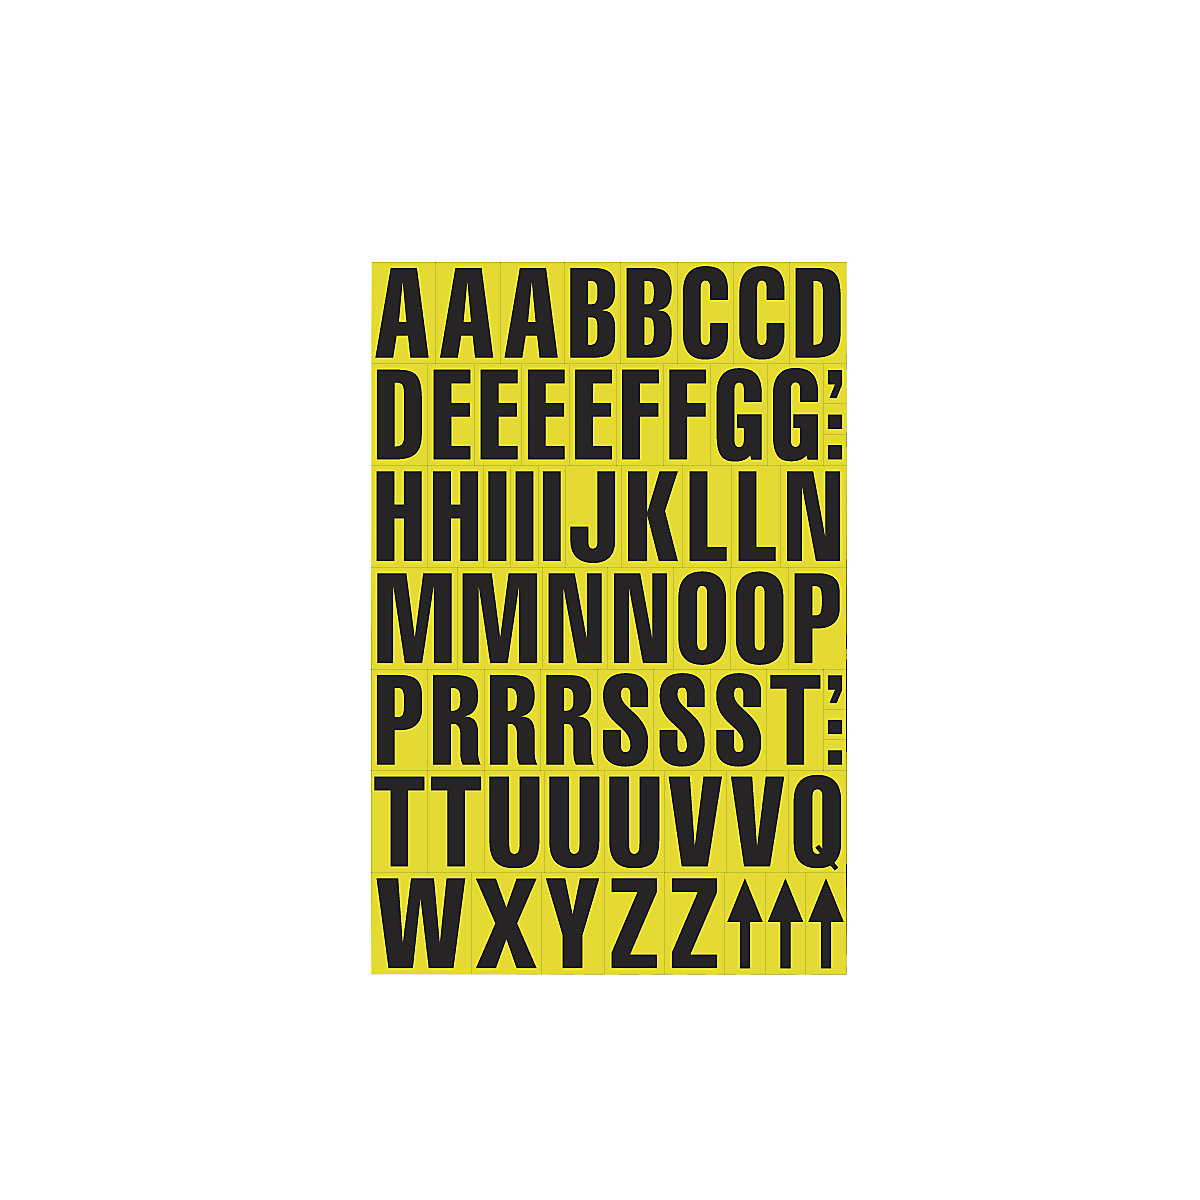 Arch DIN A4 s písmovými znaky, magnetická písmena, bal.j. 2 ks, žlutý podklad-4